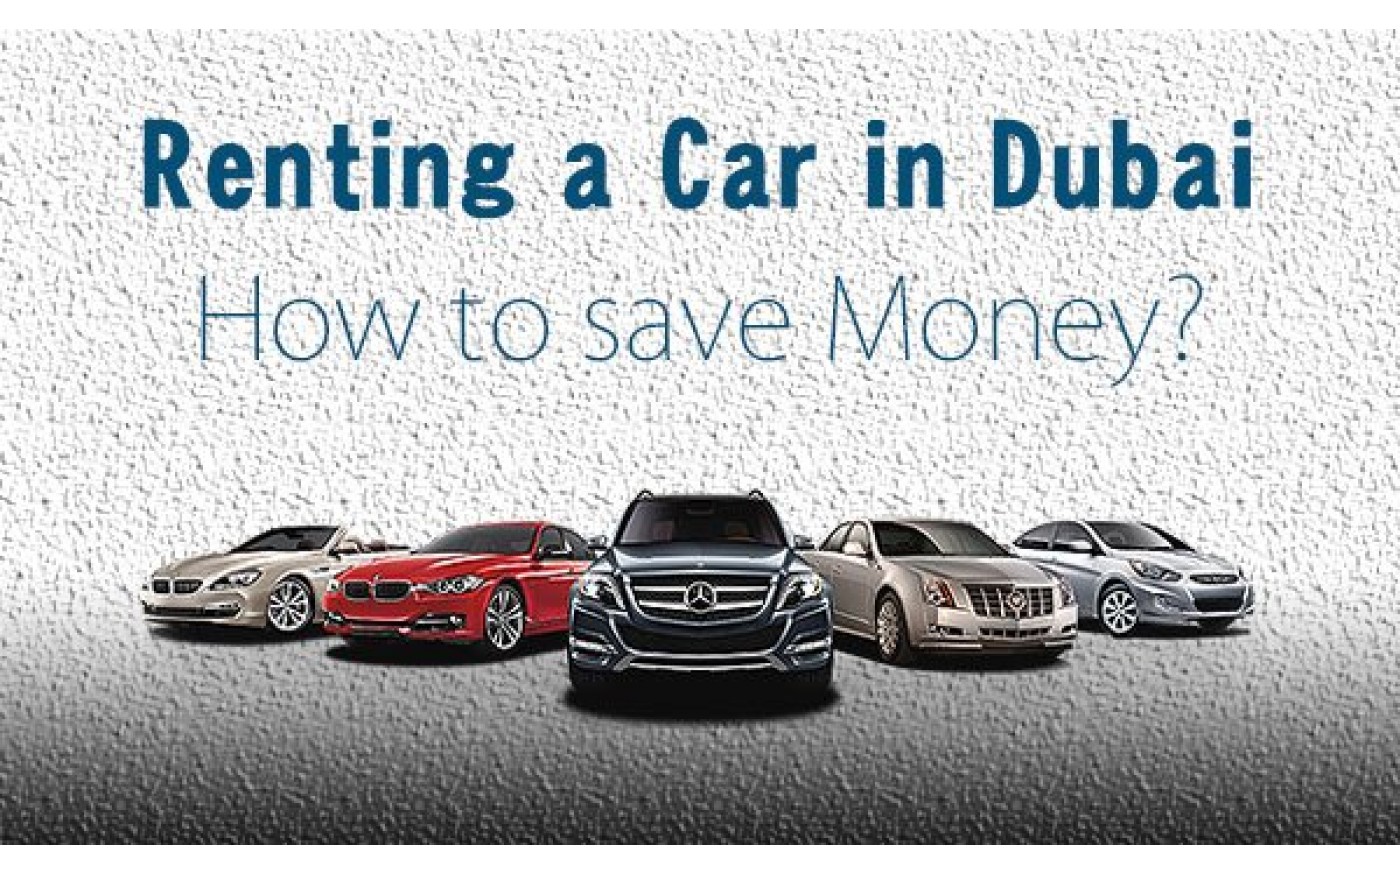 Rules To Rent A Car Dubai, UAE - Chauffeur Car Hire Dubai